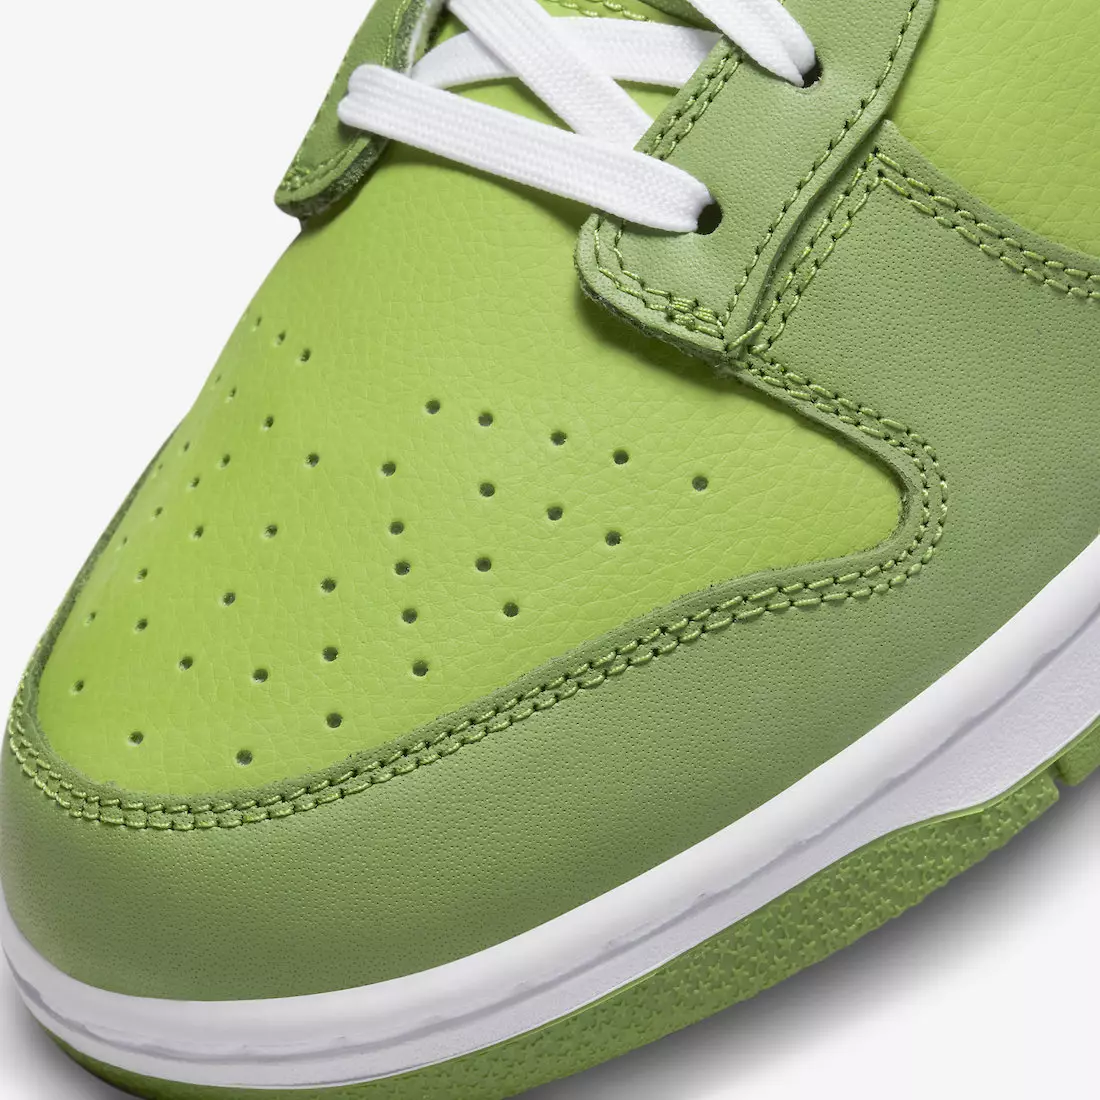 Nike Dunk Low Verdes Blancas DJ6188-300 Fecha de lanzamiento